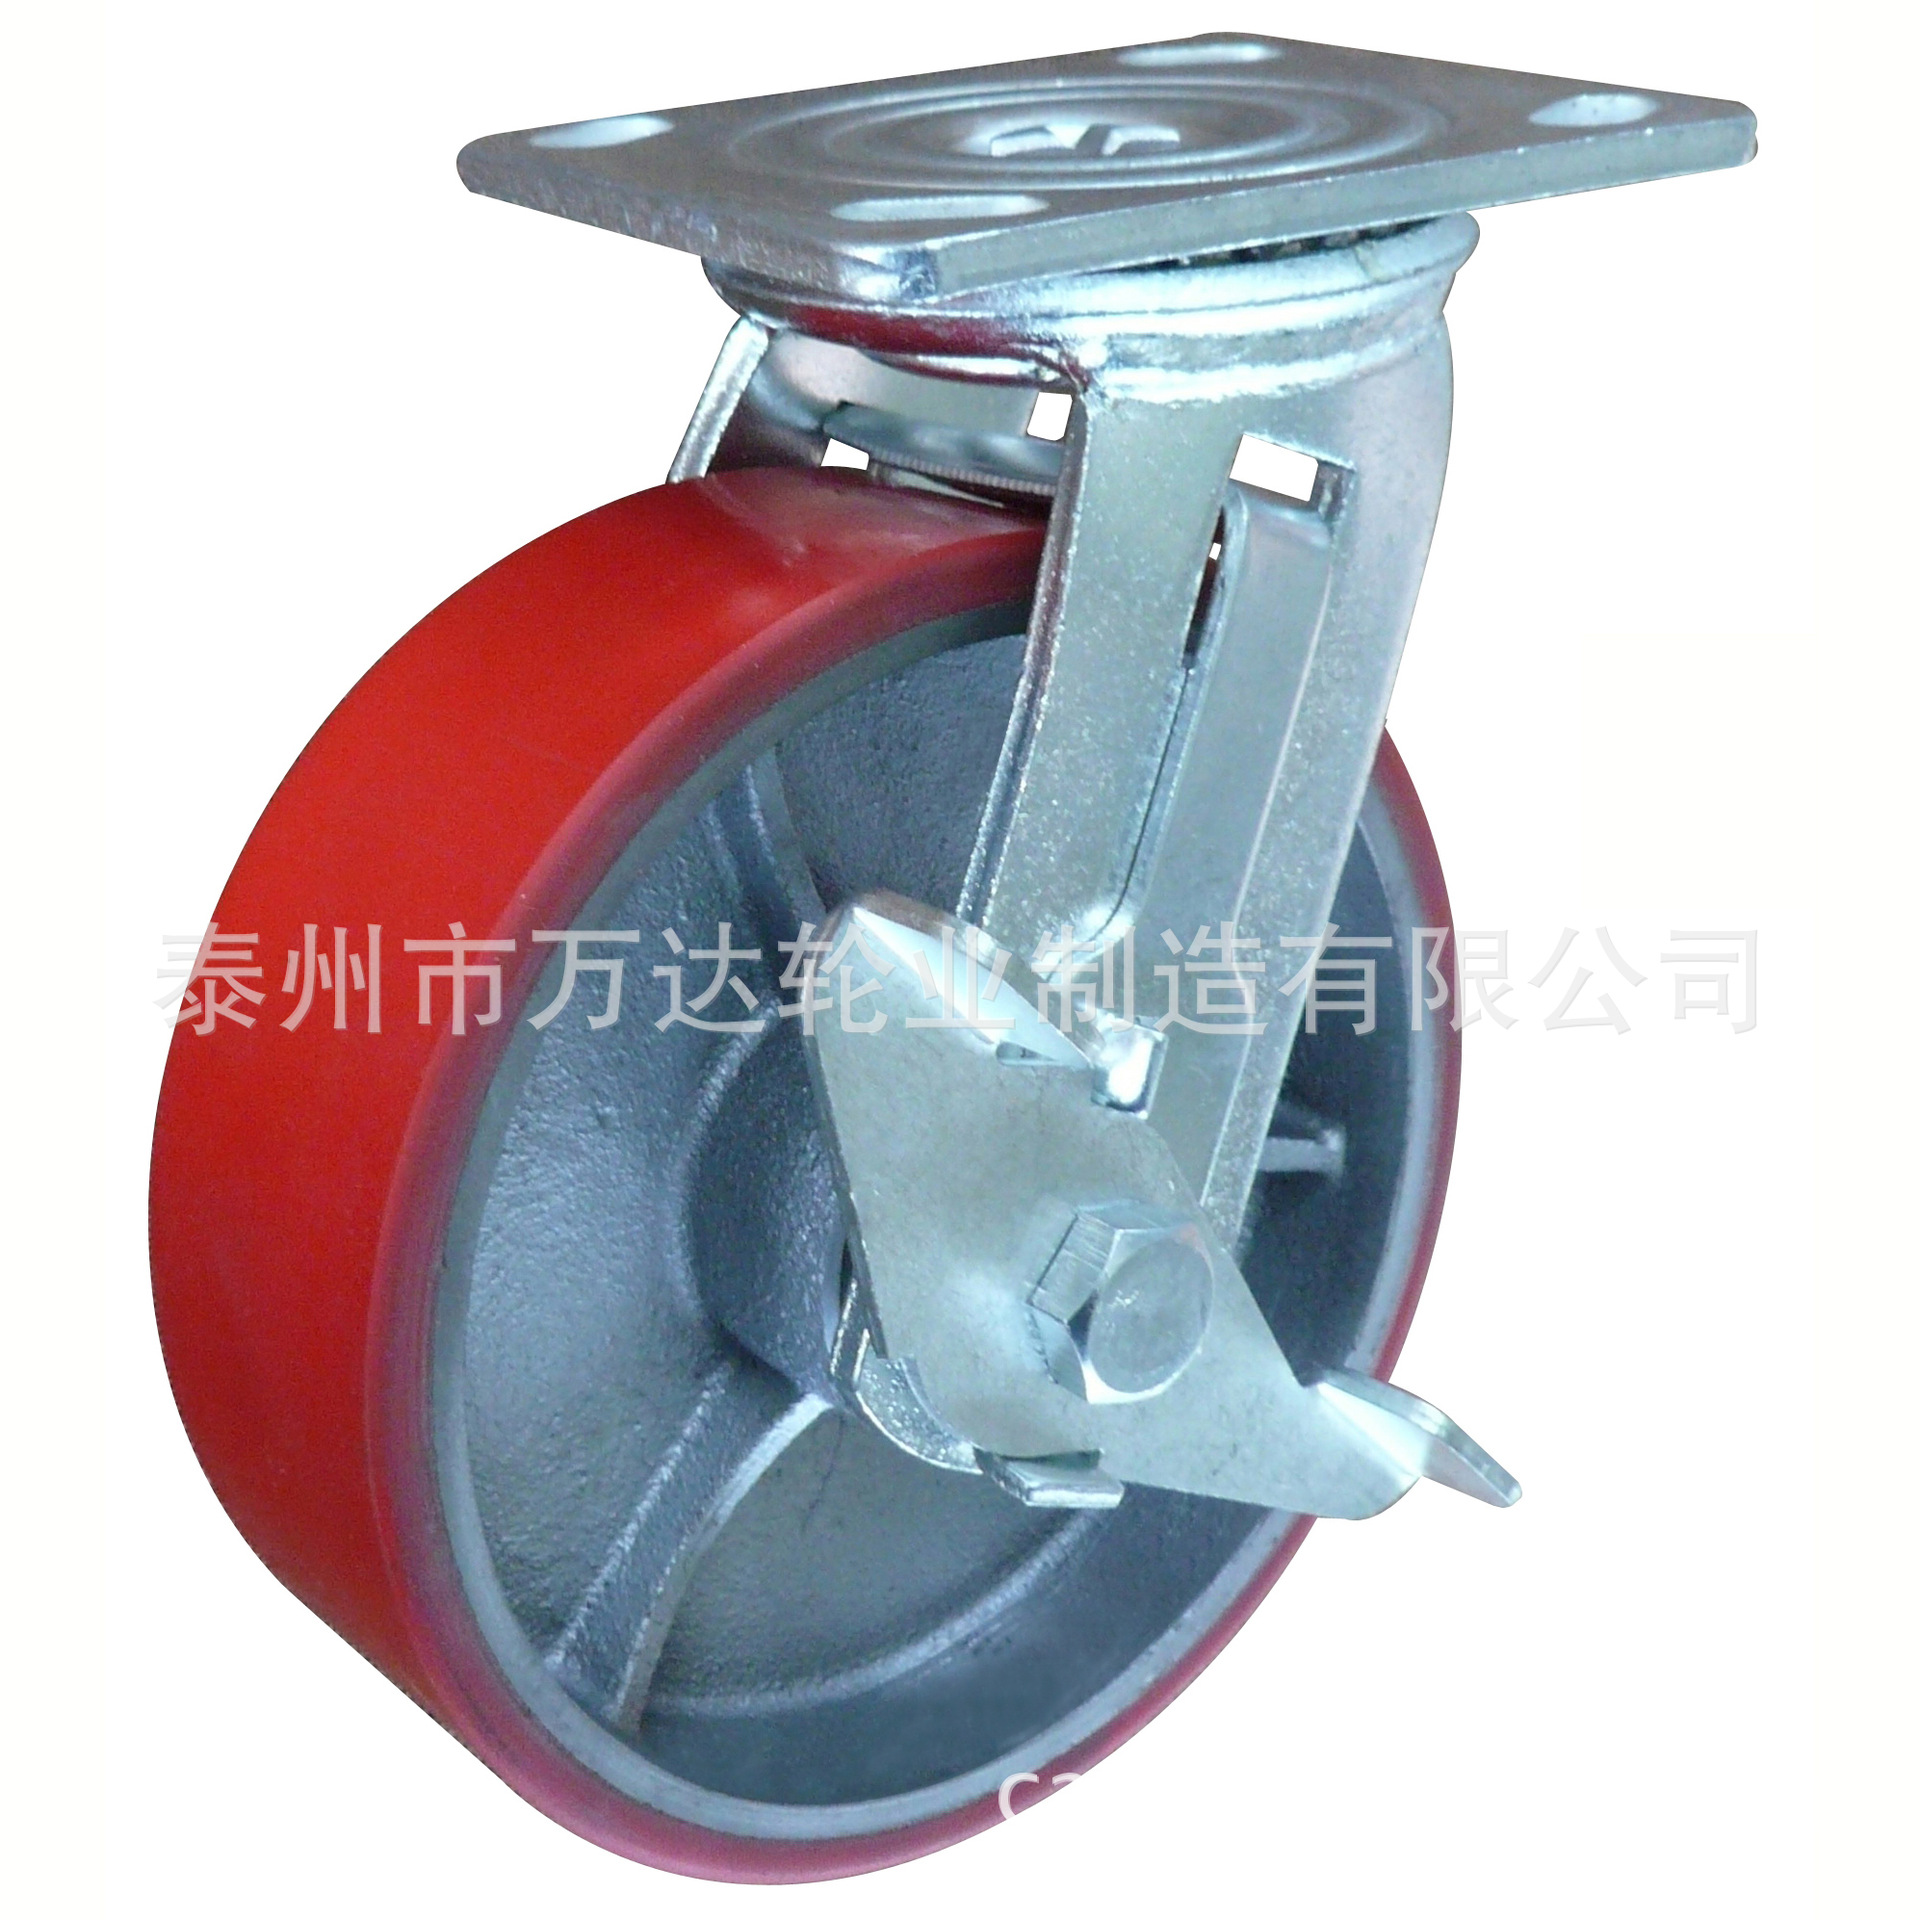 直销供应 6寸铸铁包聚氨酯脚轮 工业万向轮刹车轮 铸铁重型脚轮